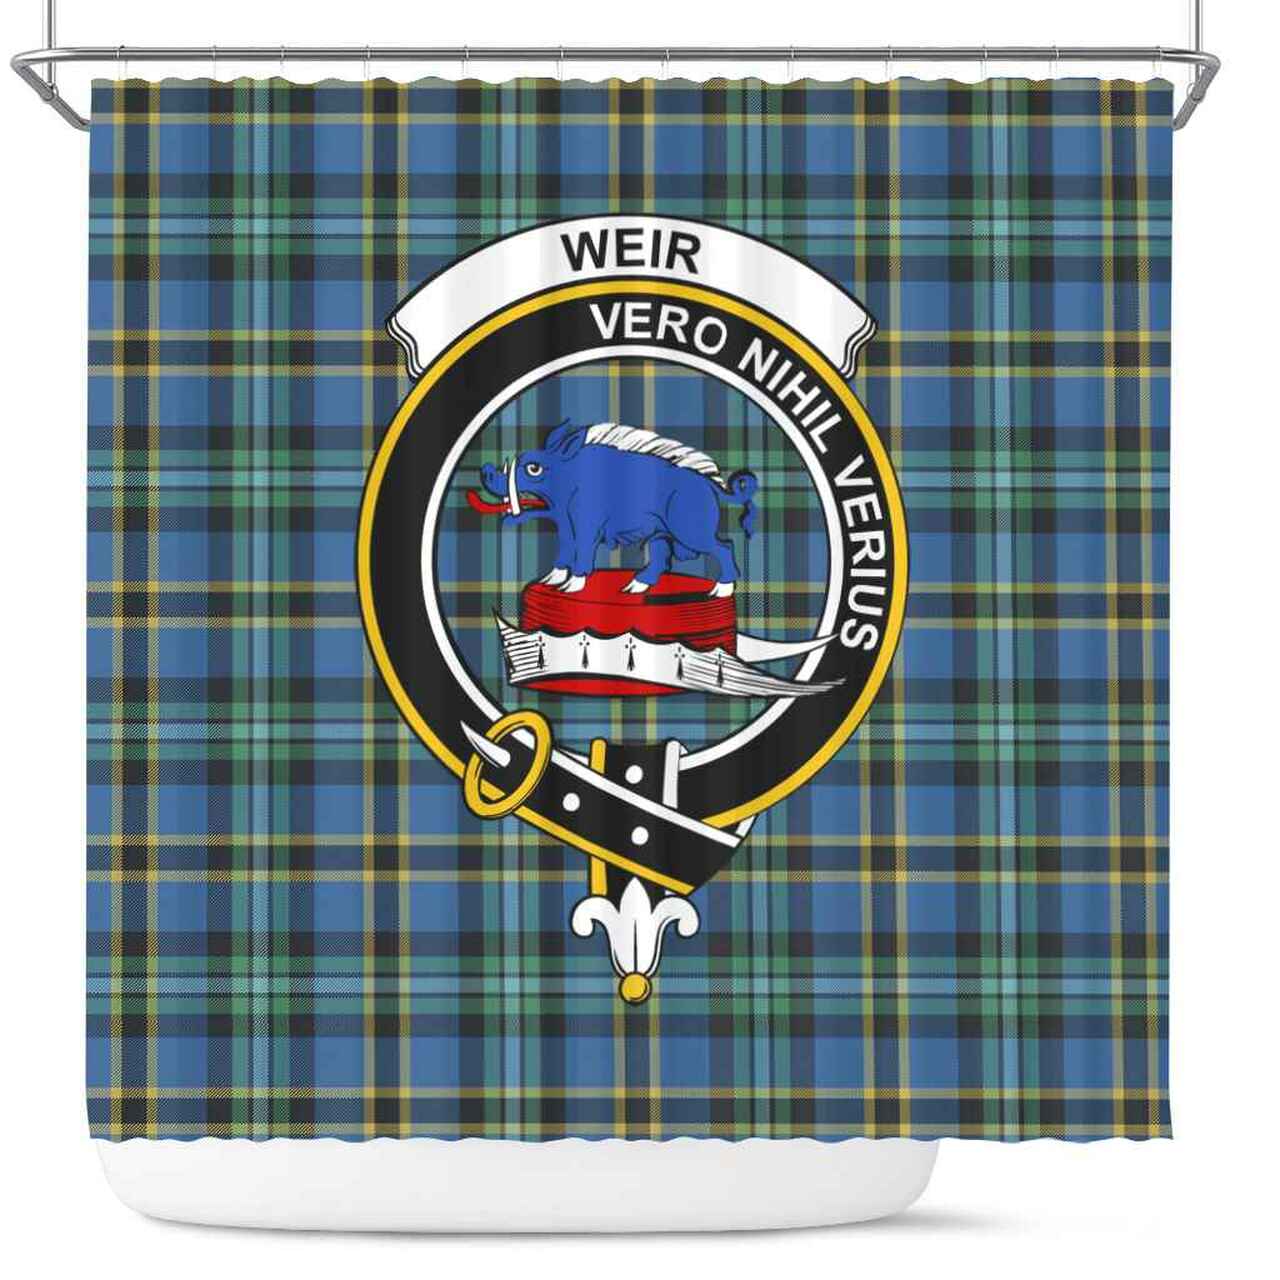 Weir Tartan Crest Shower Curtain